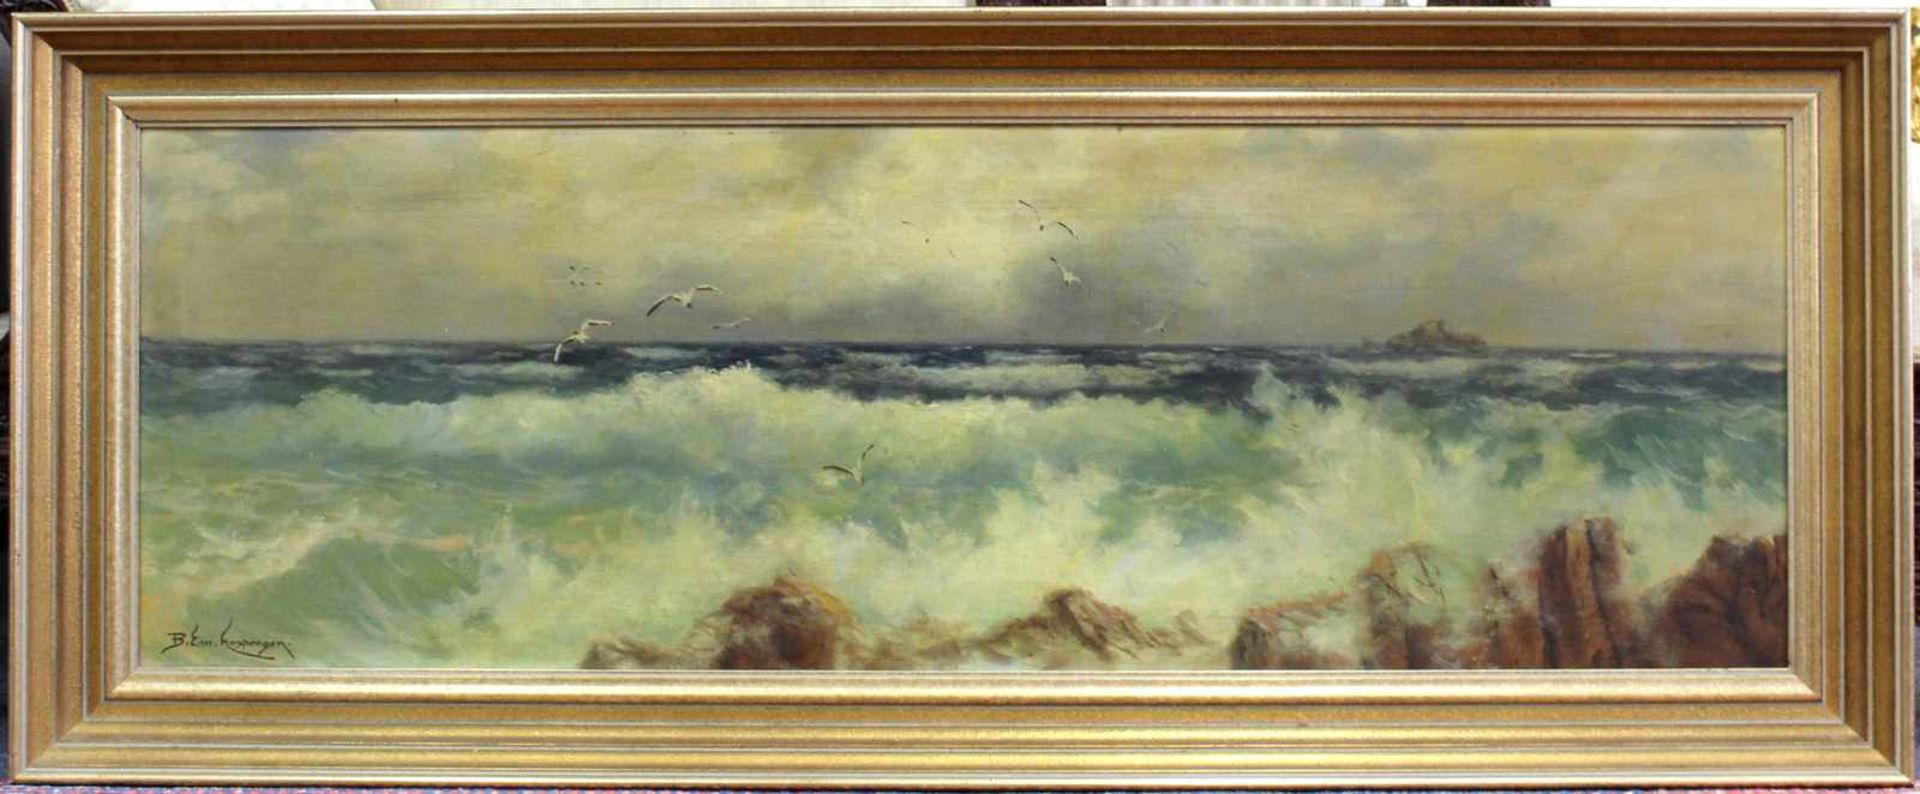 Emanuel HOSPERGER (1891 - 1984). Meeresbrandung mit Möwen. 45 cm x 146 cm. Ölgemälde auf Leinwand. - Image 2 of 8